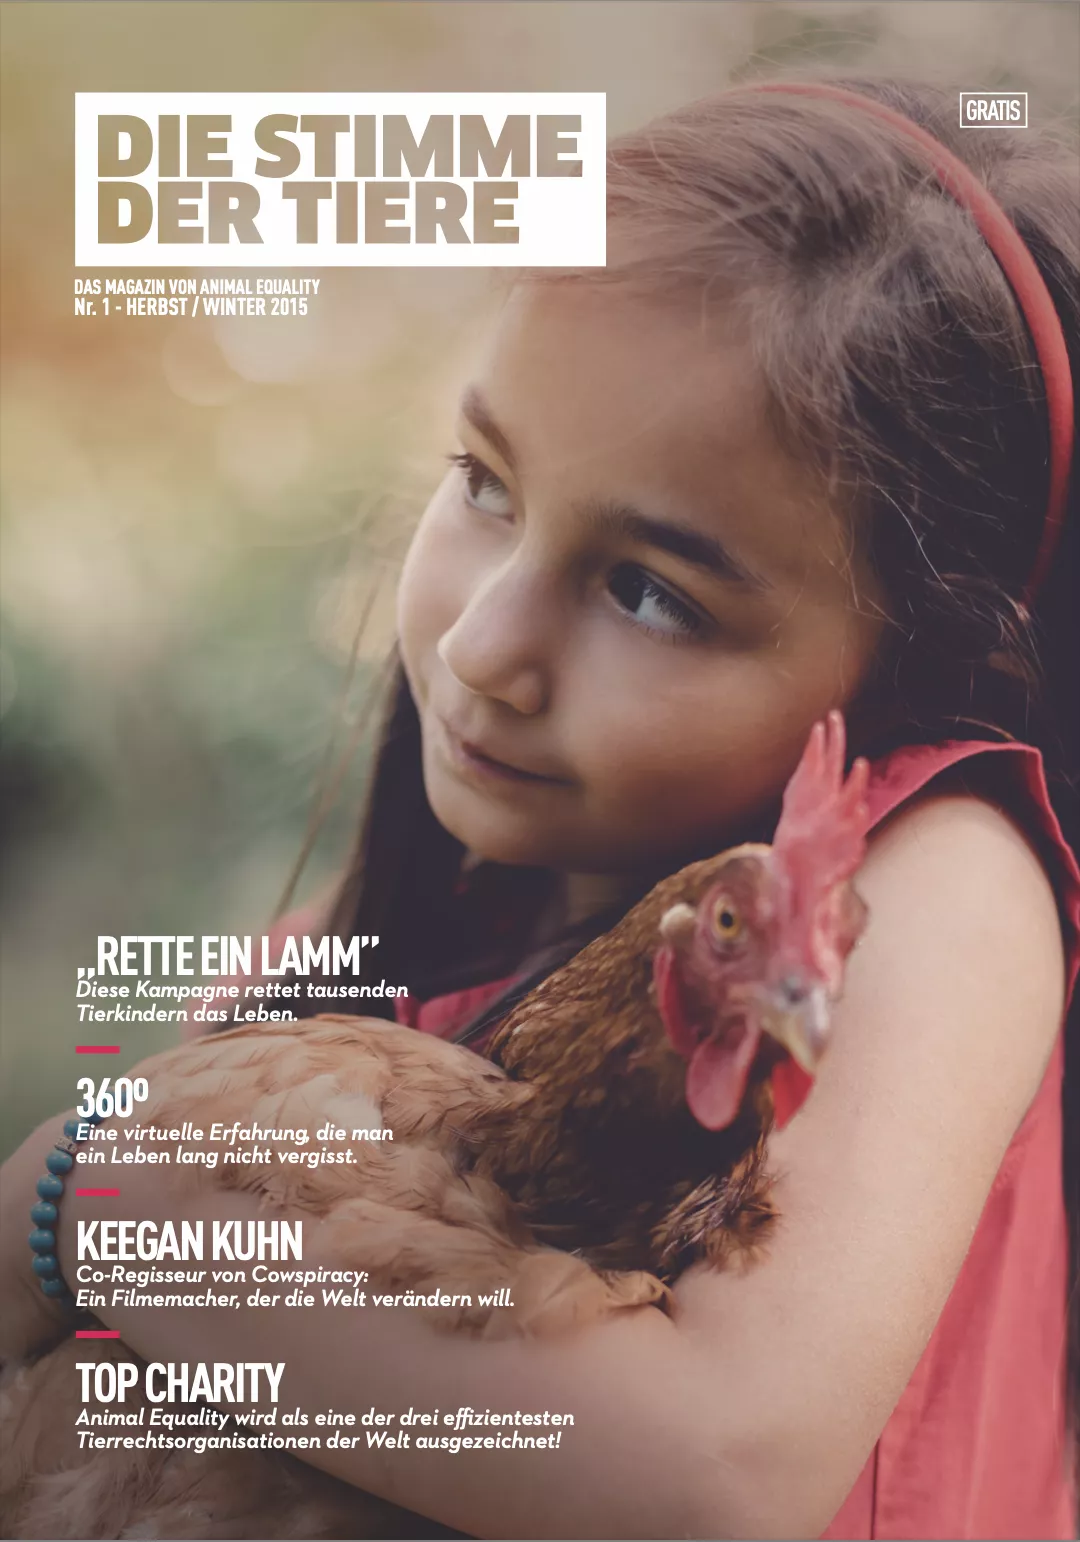 Die Stimme der Tiere - Das Magazin von Animal Equality Nr. 1 - 2015